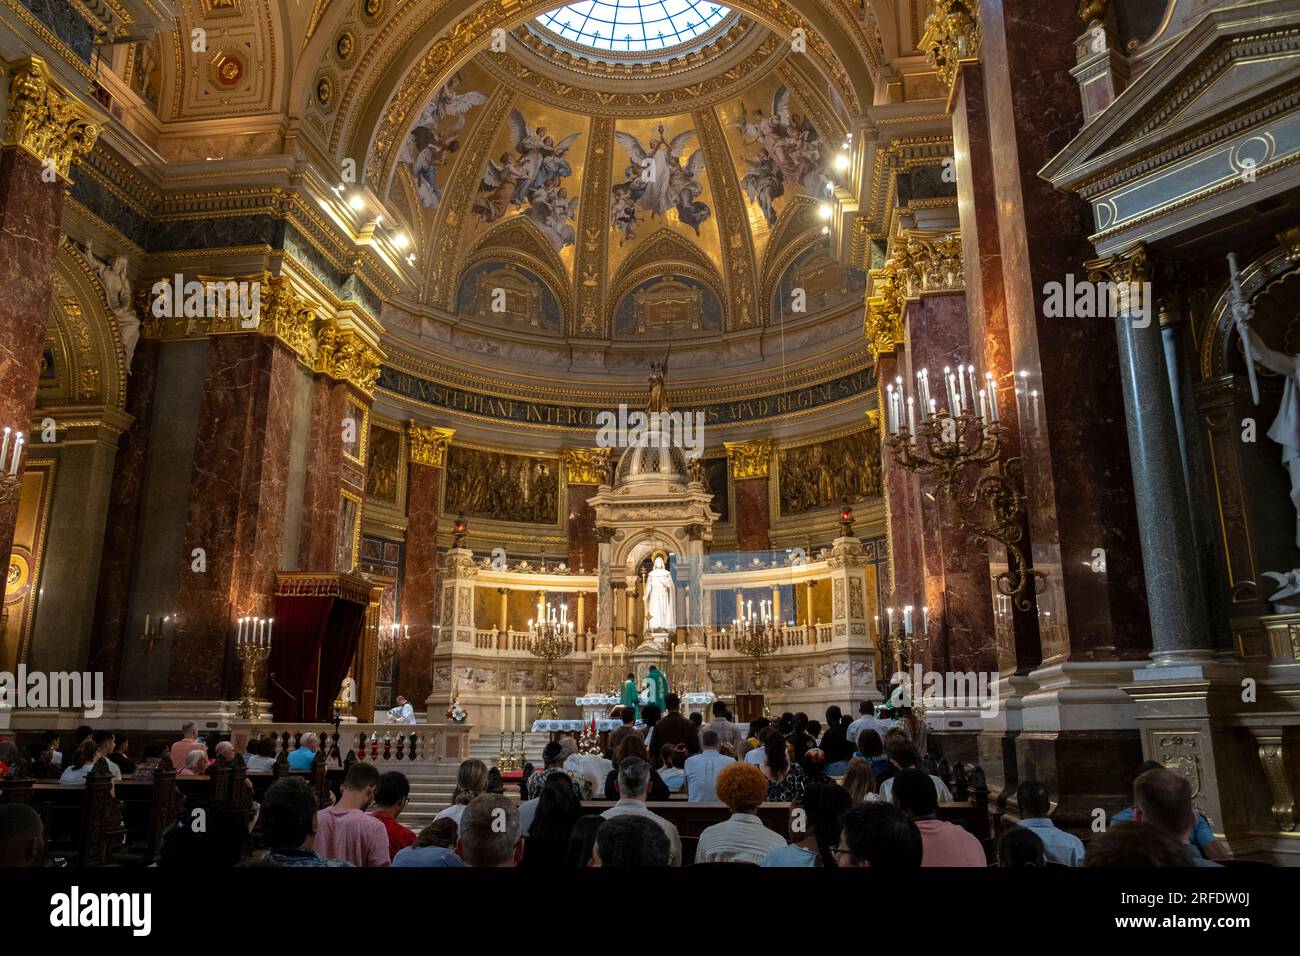 Des ecclésiastiques africains exécutent une cérémonie à l'intérieur de la cathédrale Saint-Étienne. Budapest, Hongrie Banque D'Images